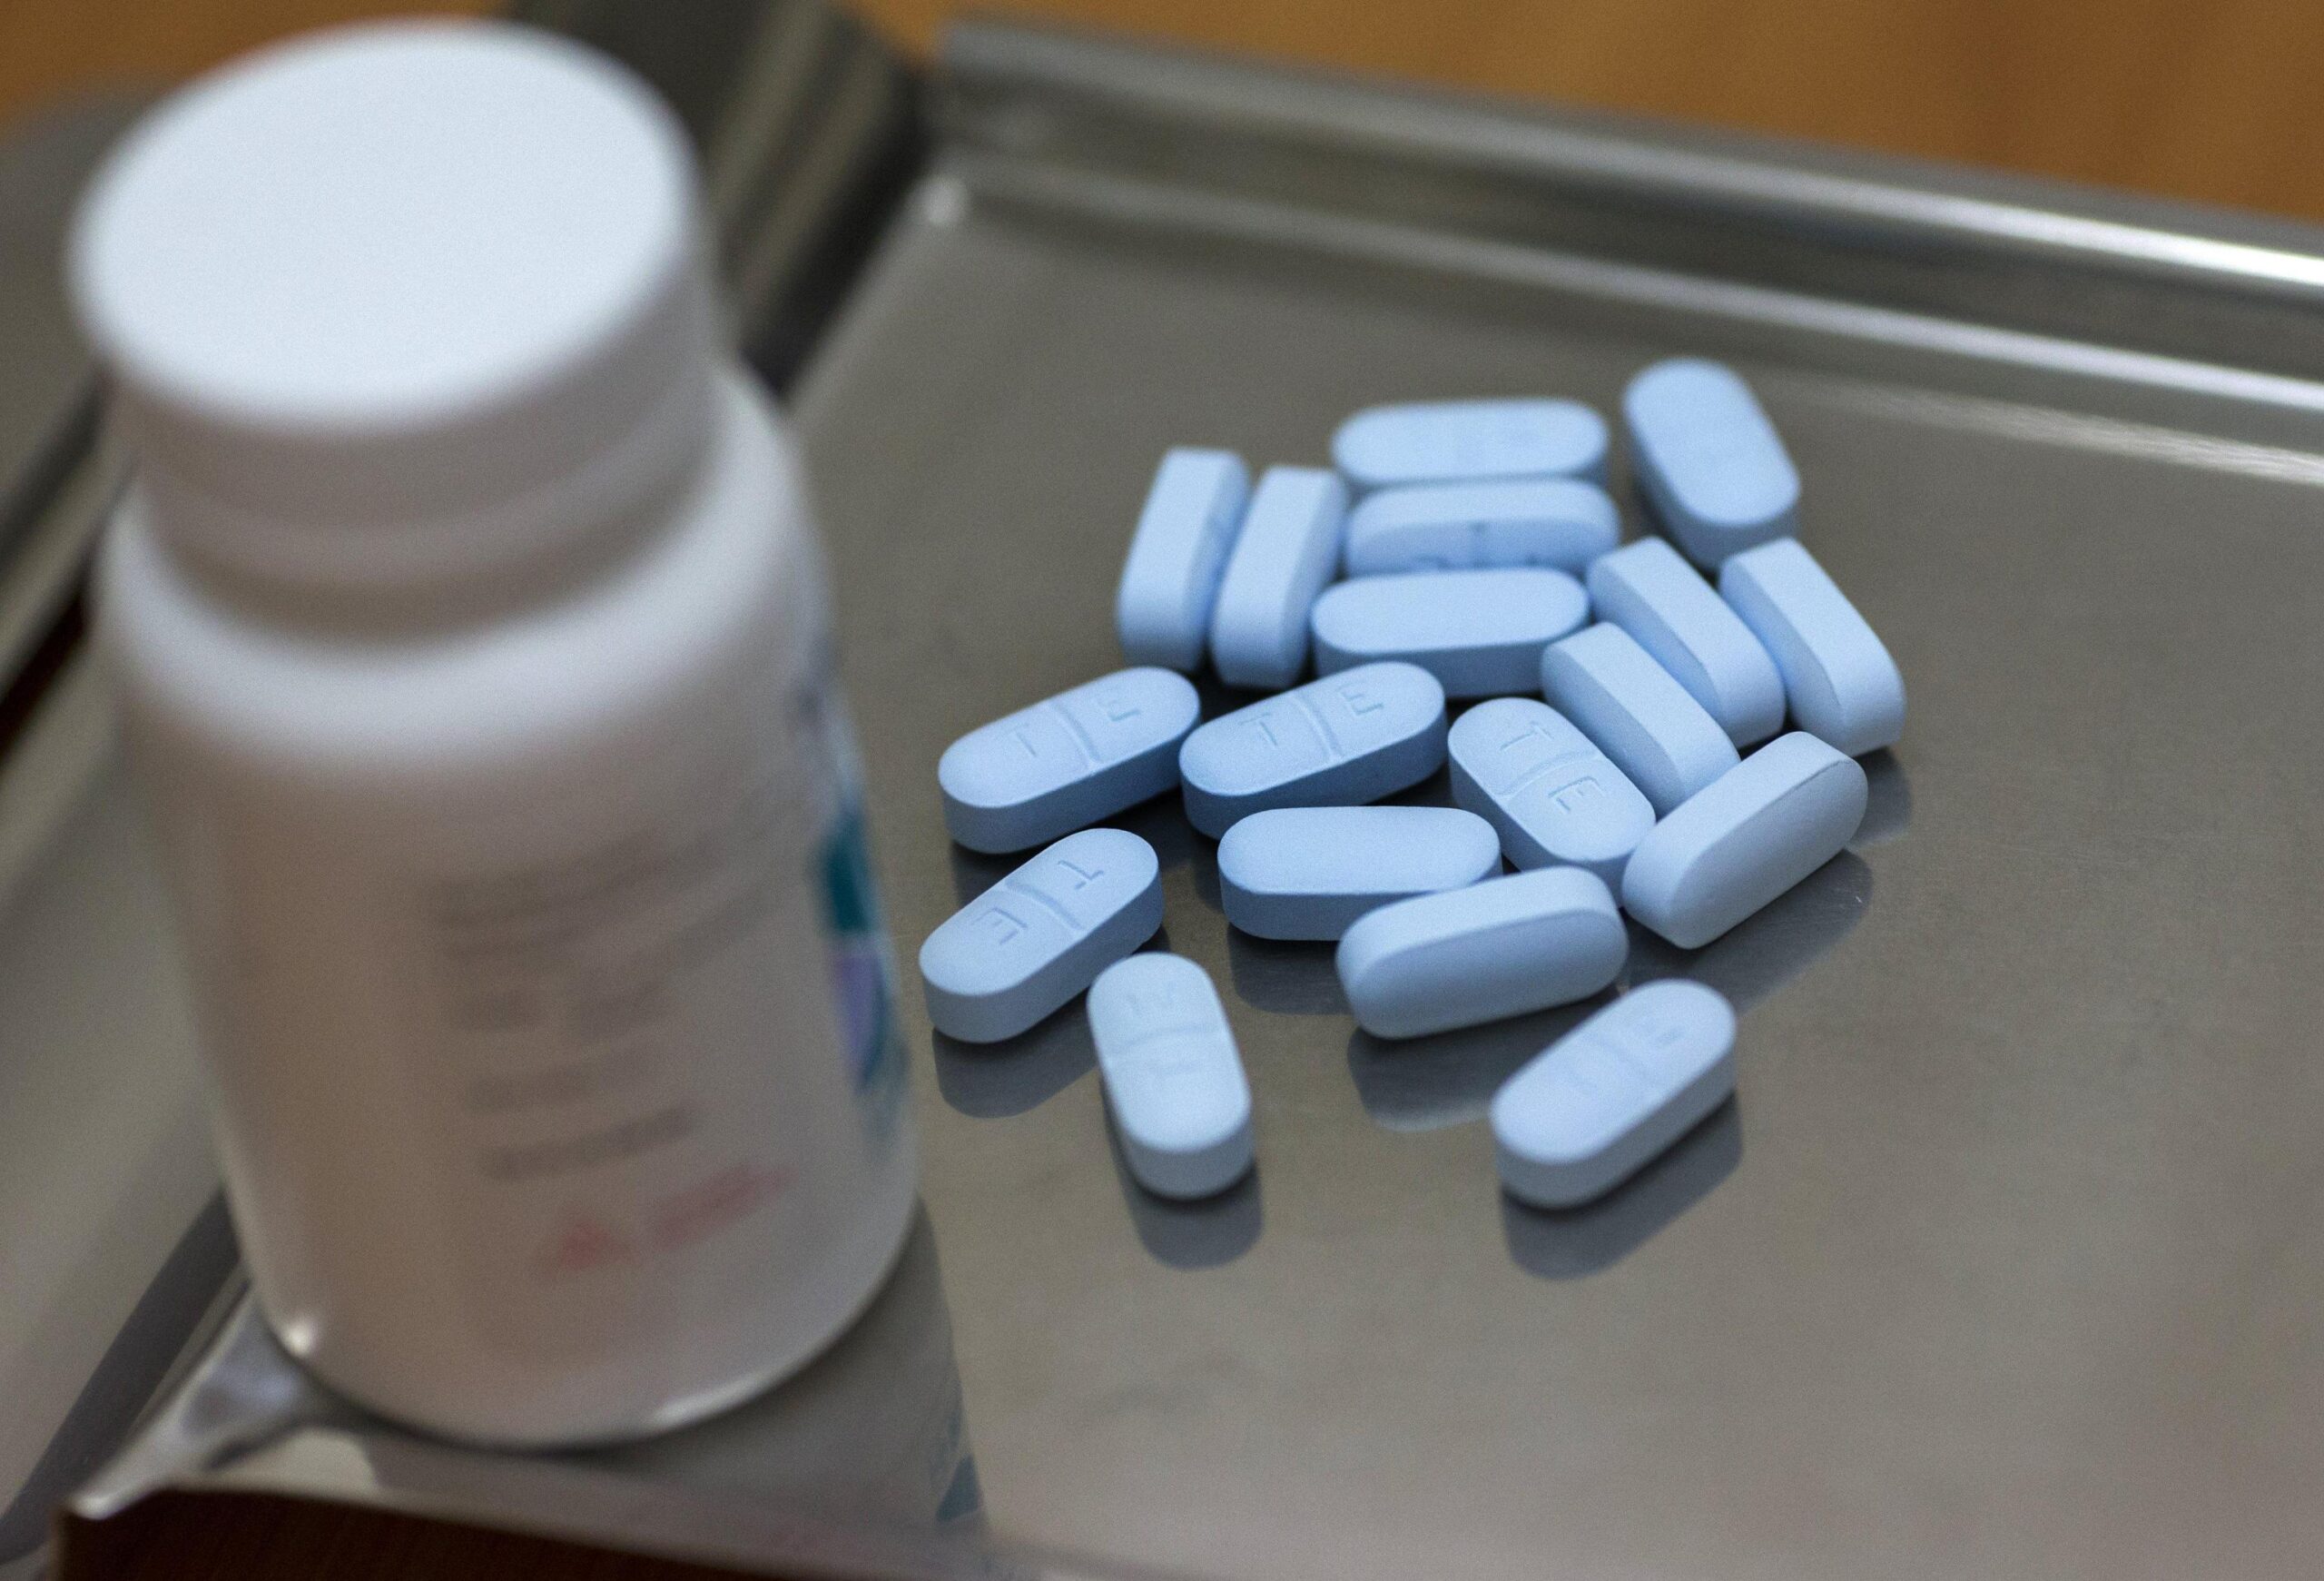 Pillola per prevenire l’HIV, le associazioni si ribellano: “Decisione inaccettabile dell’Aifa, sia gratuita subito”